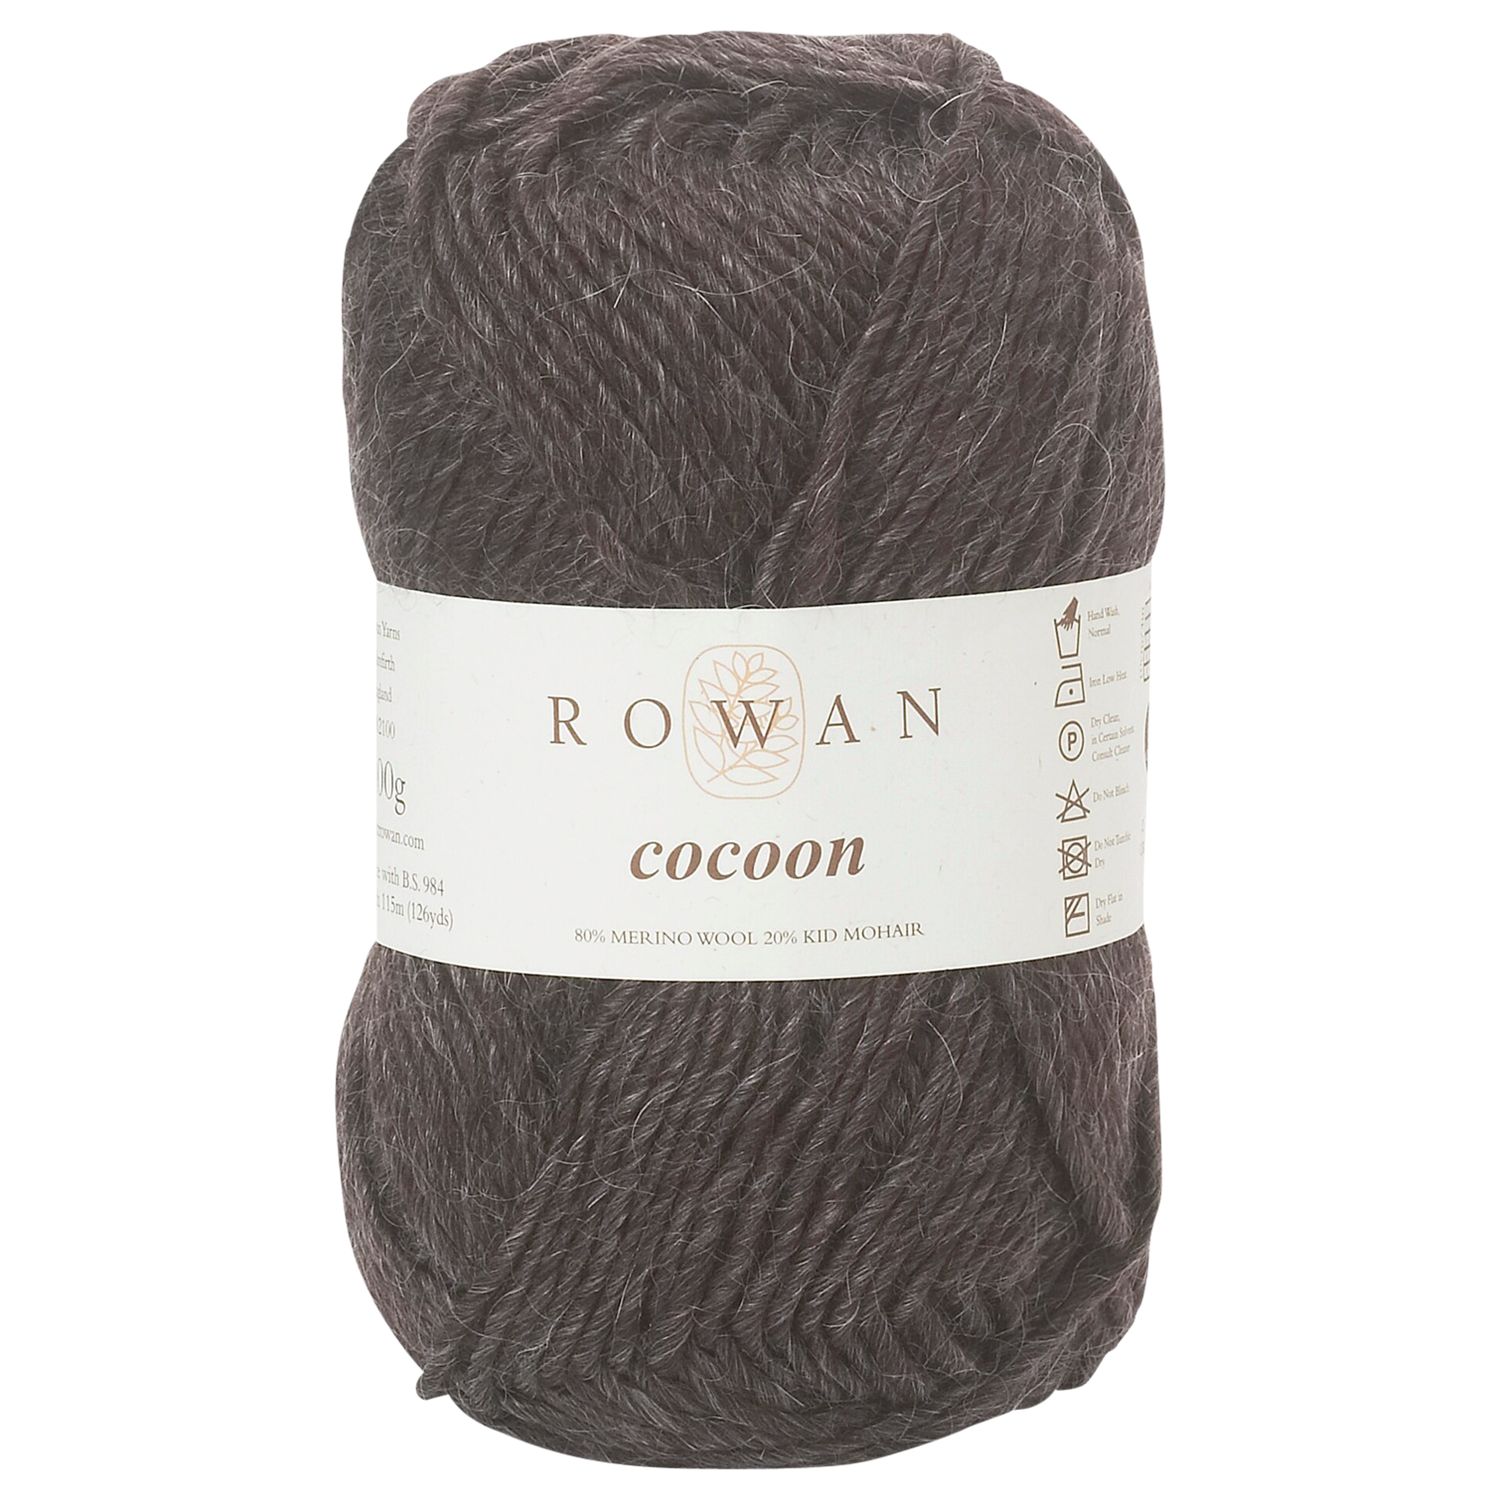 Rowan Cocoon Chunky Yarn, 100g